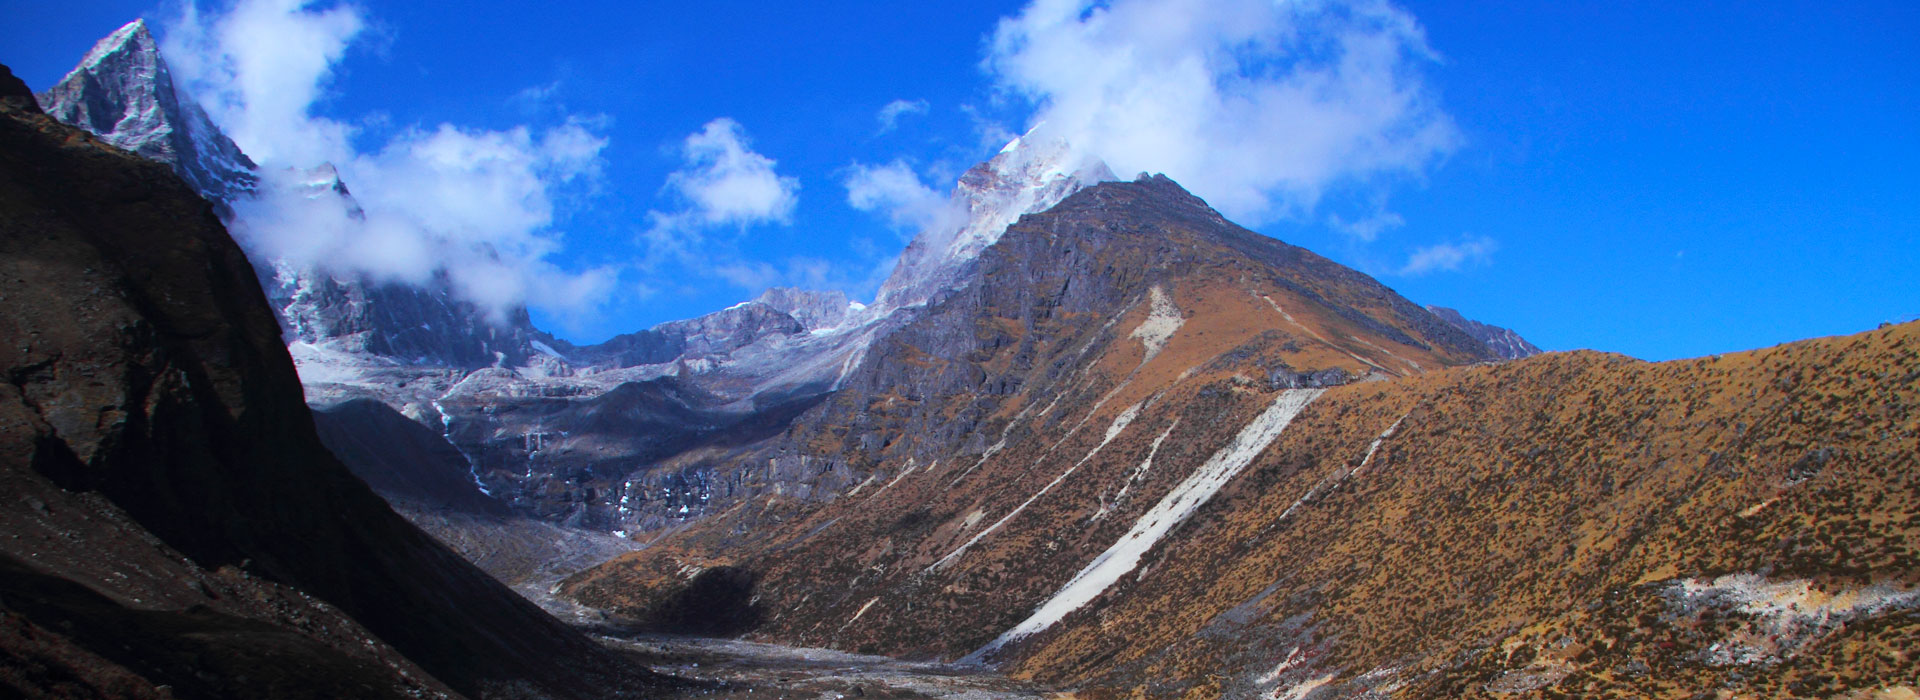 Everest Region Travel Guide